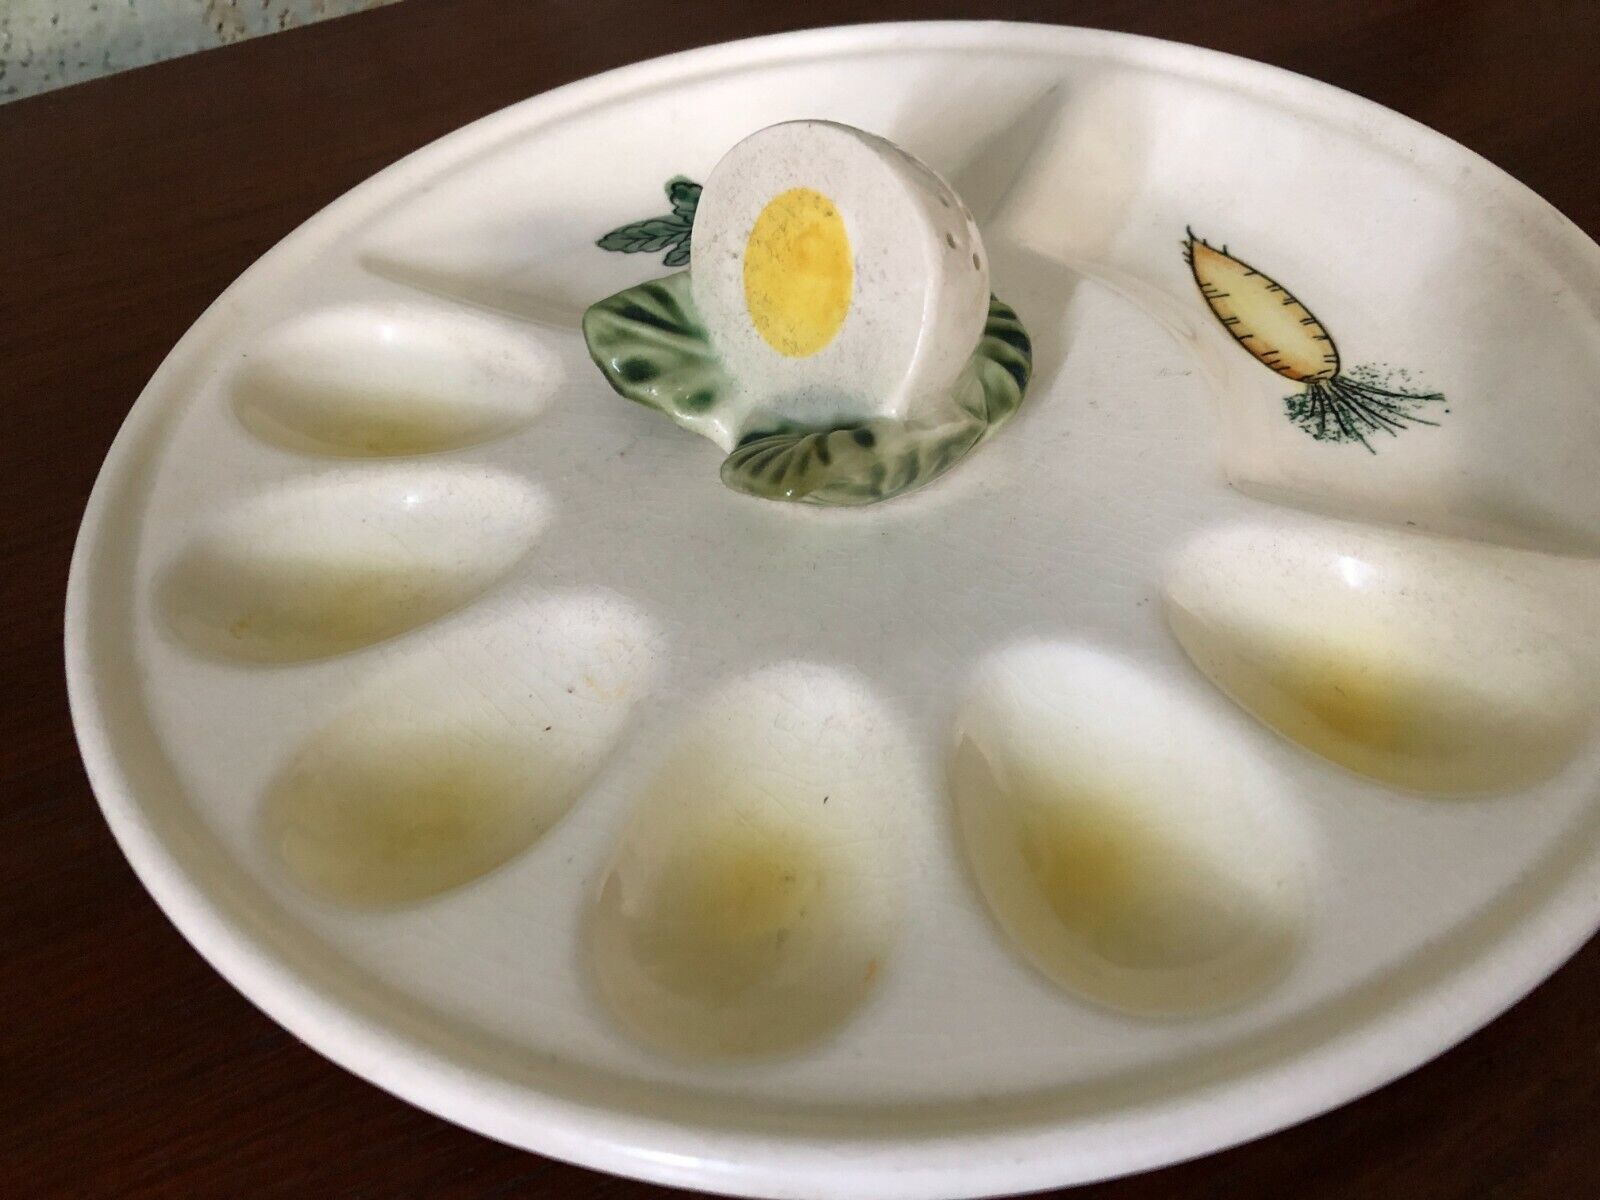 Vintage Japan Egg and Relish Dish